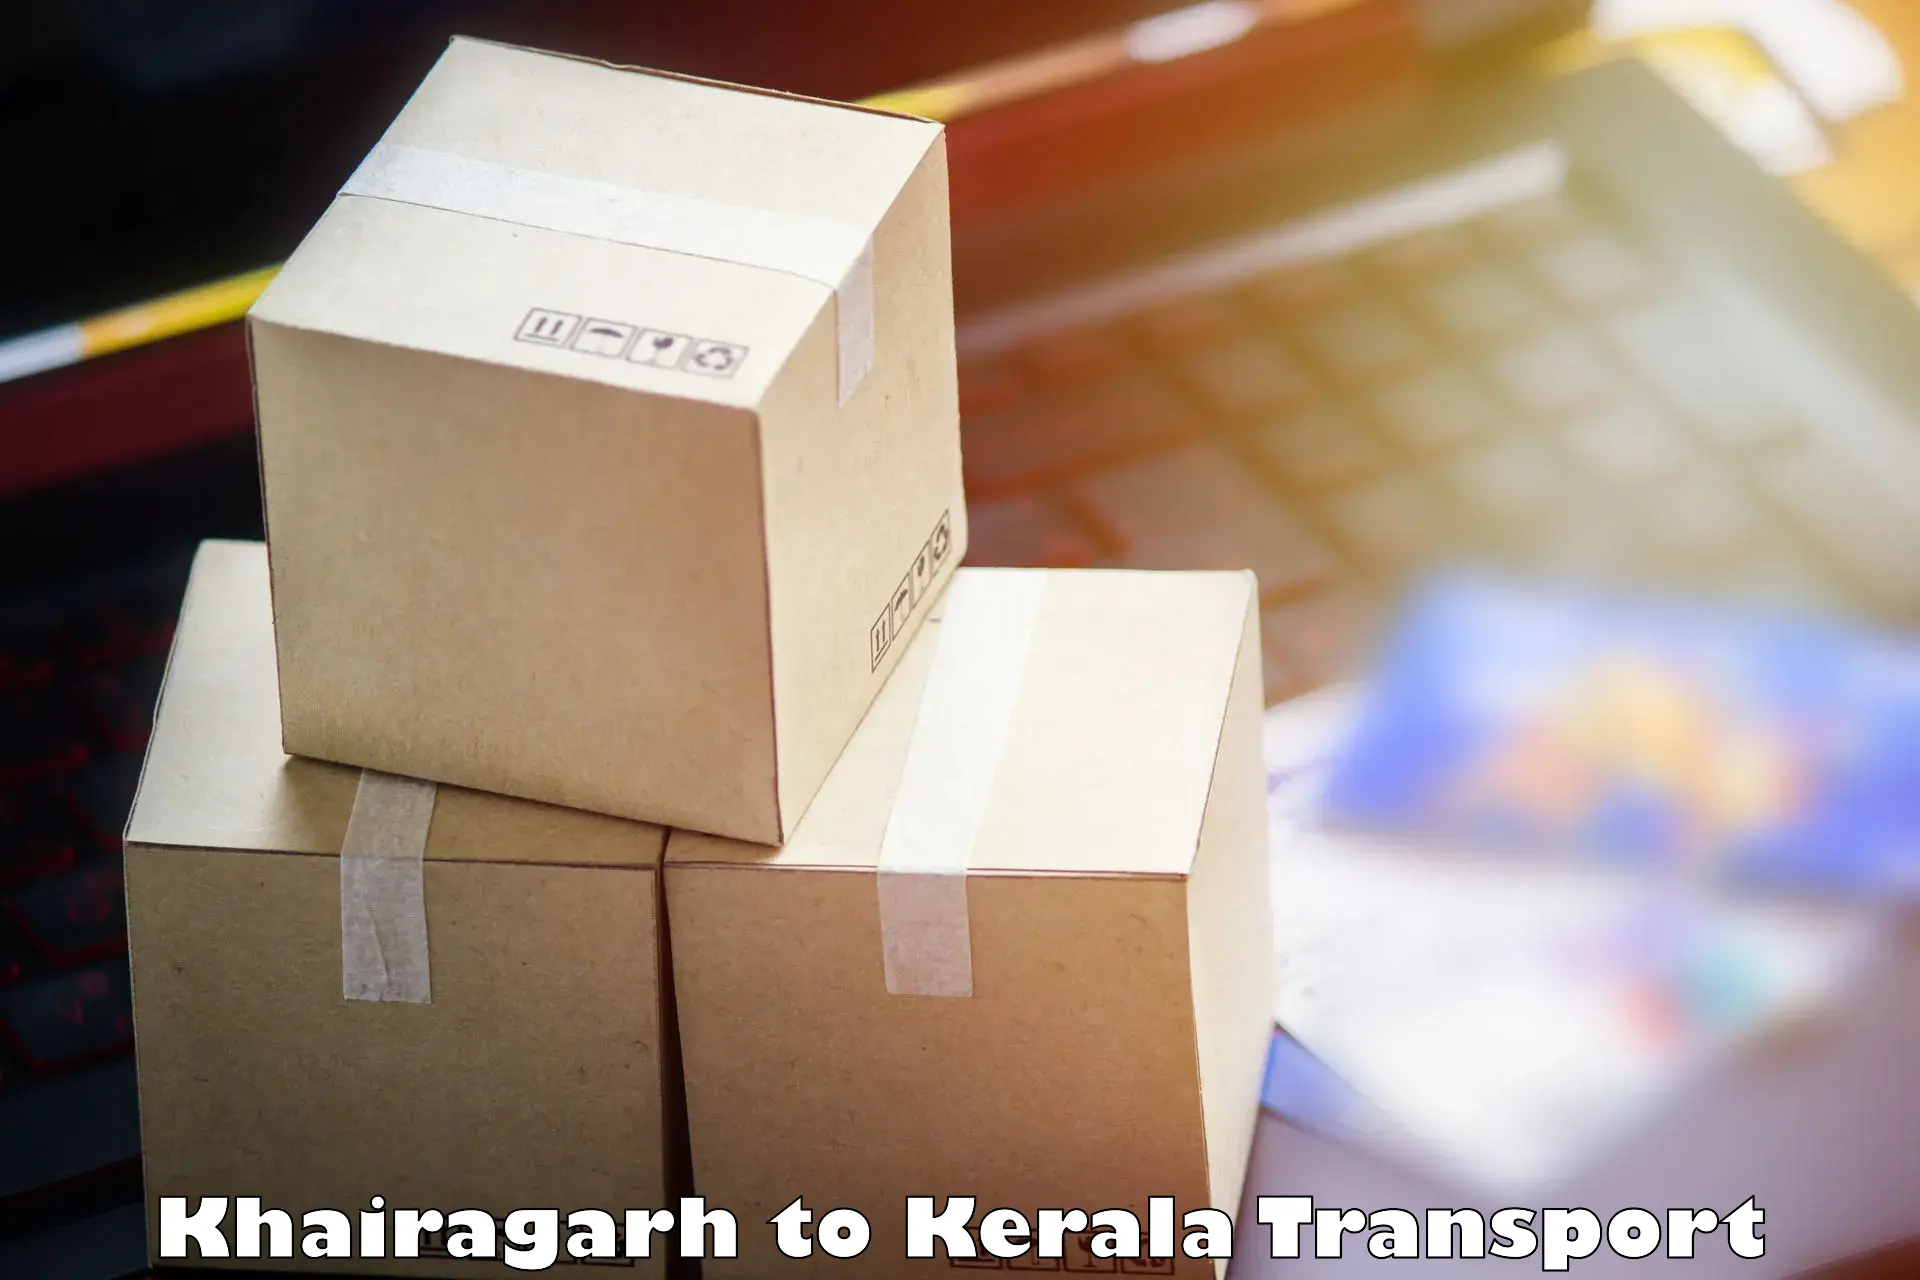 Shipping services Khairagarh to Kerala